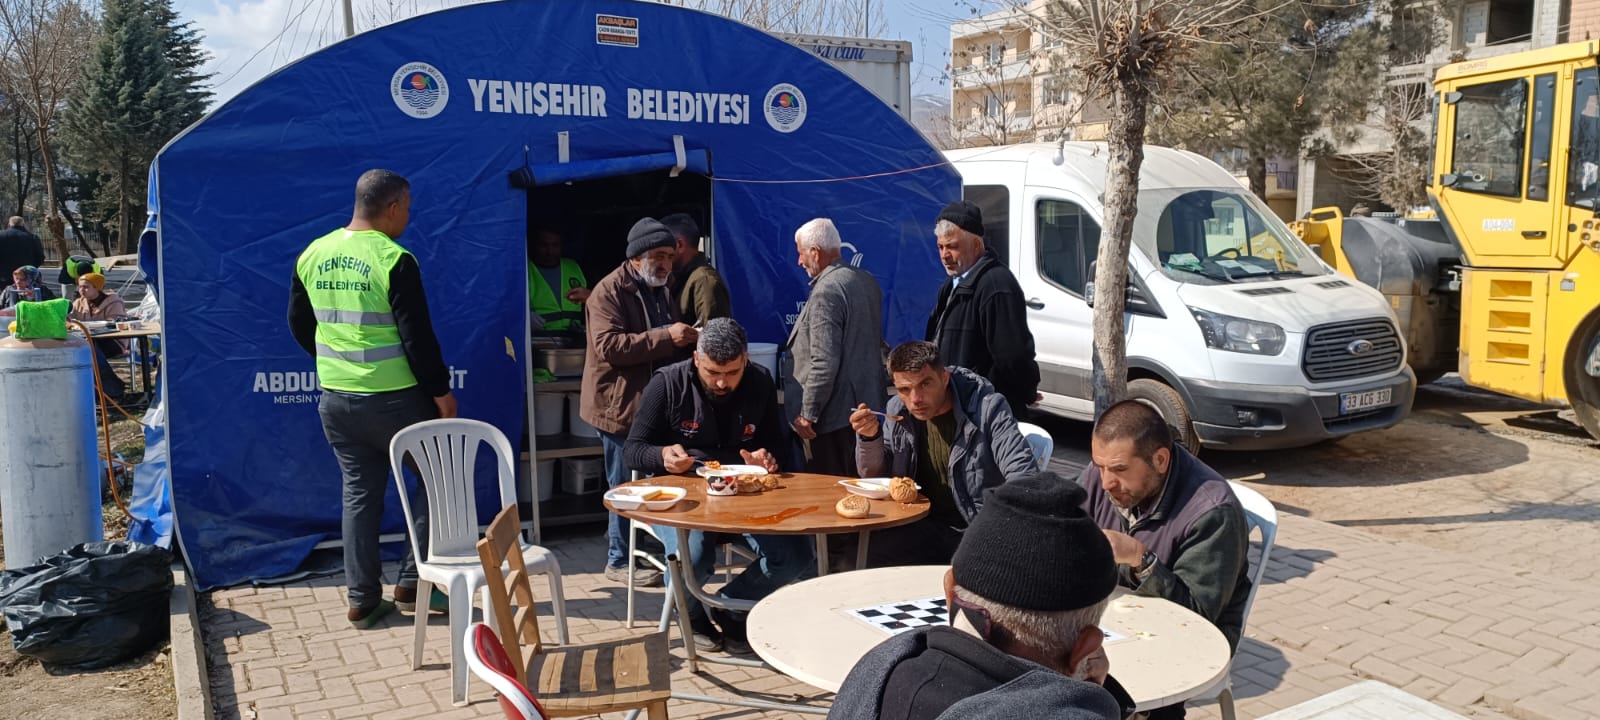 Yenişehir Belediyesi Adıyaman’da her gün 4 bin kişiye yemek ikram ediyor (4)